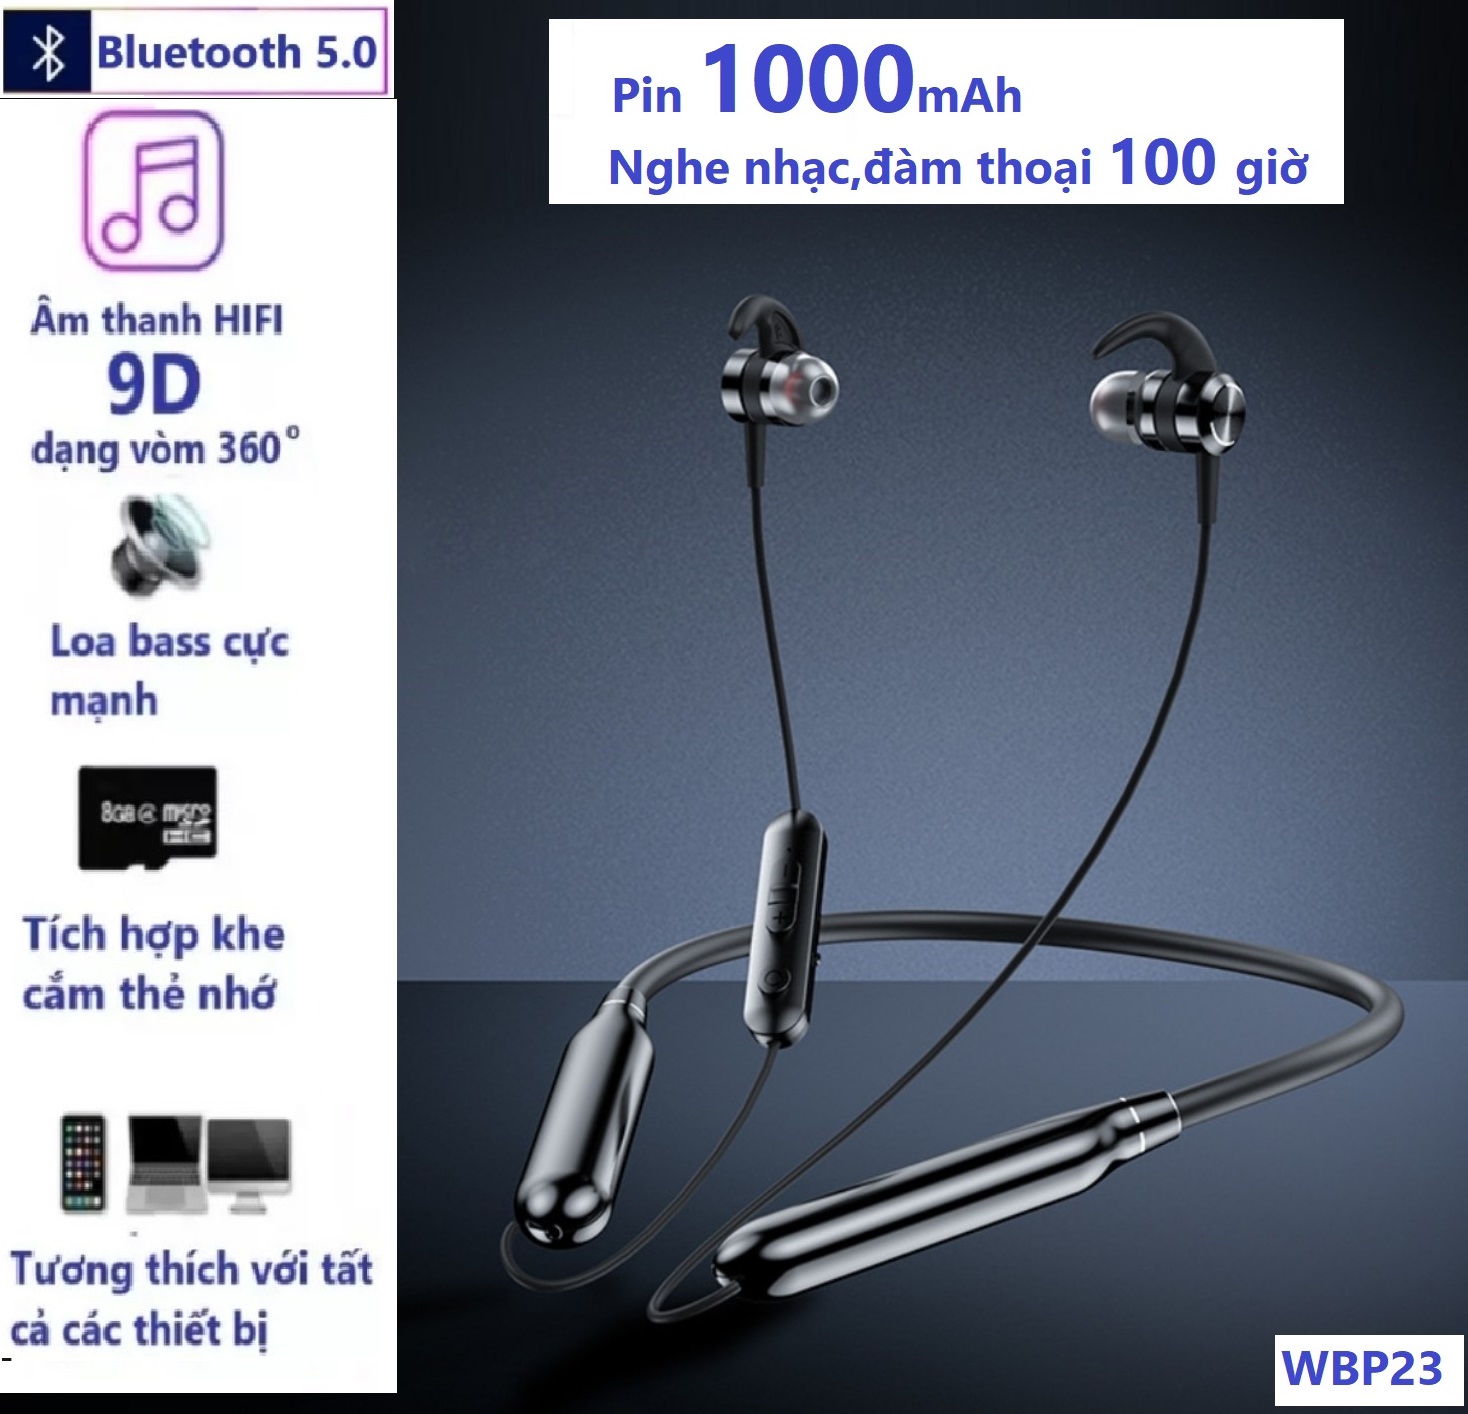 Tai Nghe Bluetooth 5.0 WBP23 Pin 1000mAh, Âm Thanh Hifi - Stereo , Nghe Nhạc Và Đàm Thoại Liên Tục Từ 80 Giờ Đến 100 Giờ Tùy Theo Mức ÂM Lượng, Hỗ Trợ Khe Lắp Thẻ Nhớ ,Chức Năn Siri